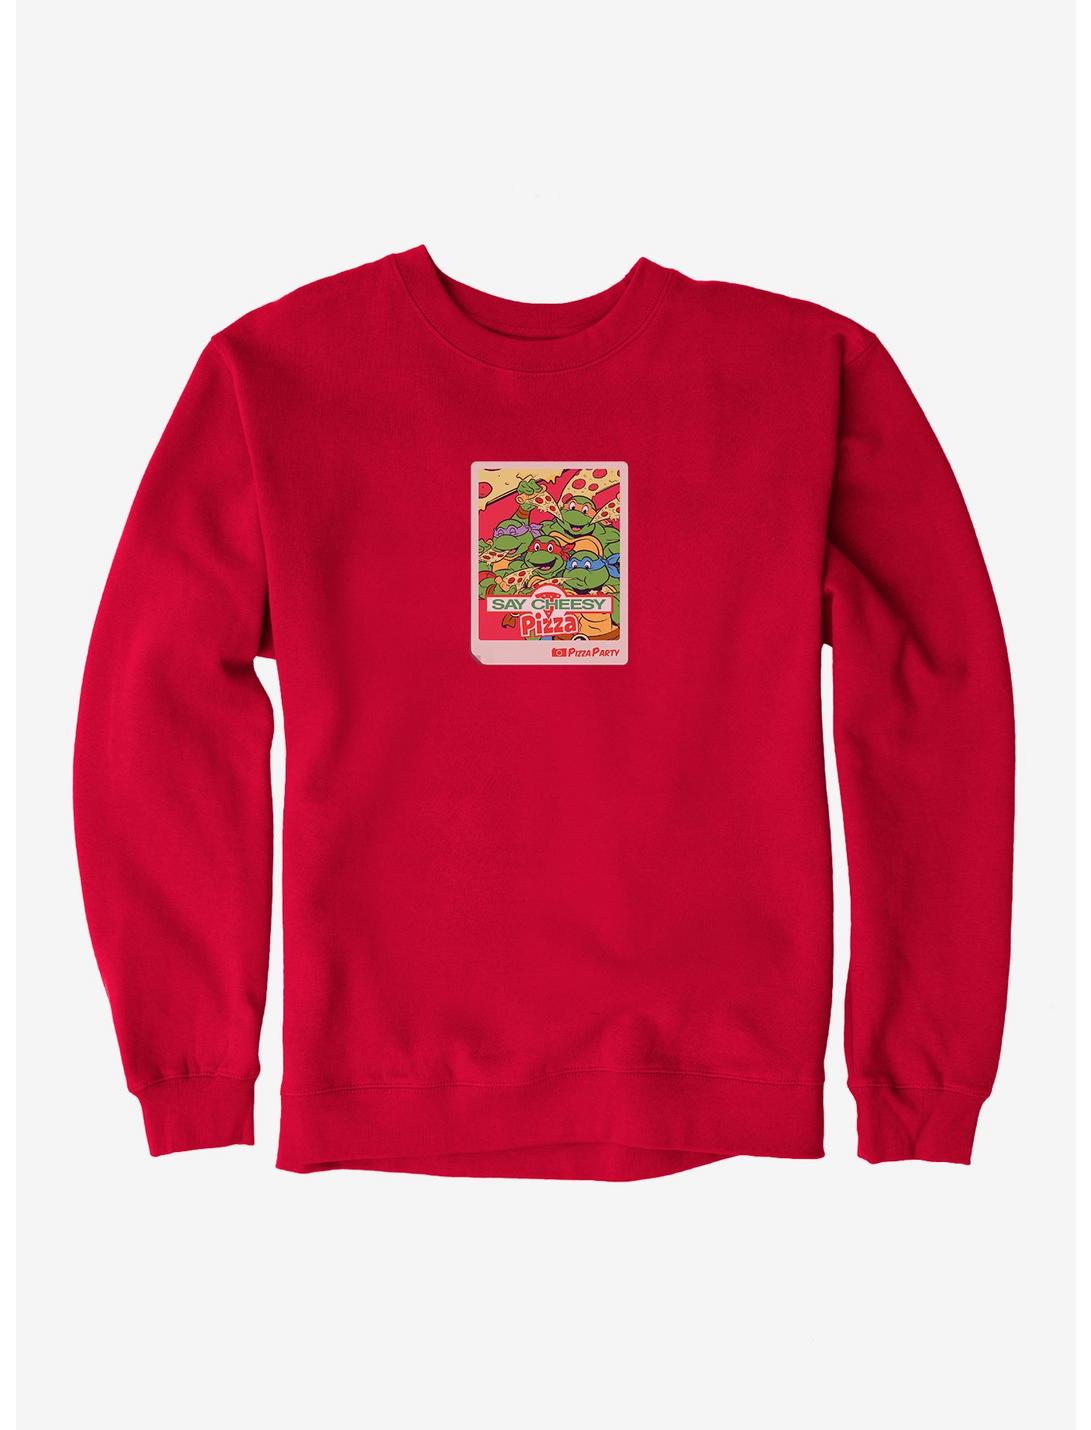 Teenage Mutant Ninja Turtles Say Cheesy Pizza Photo Sweatshirt, RED, hi-res